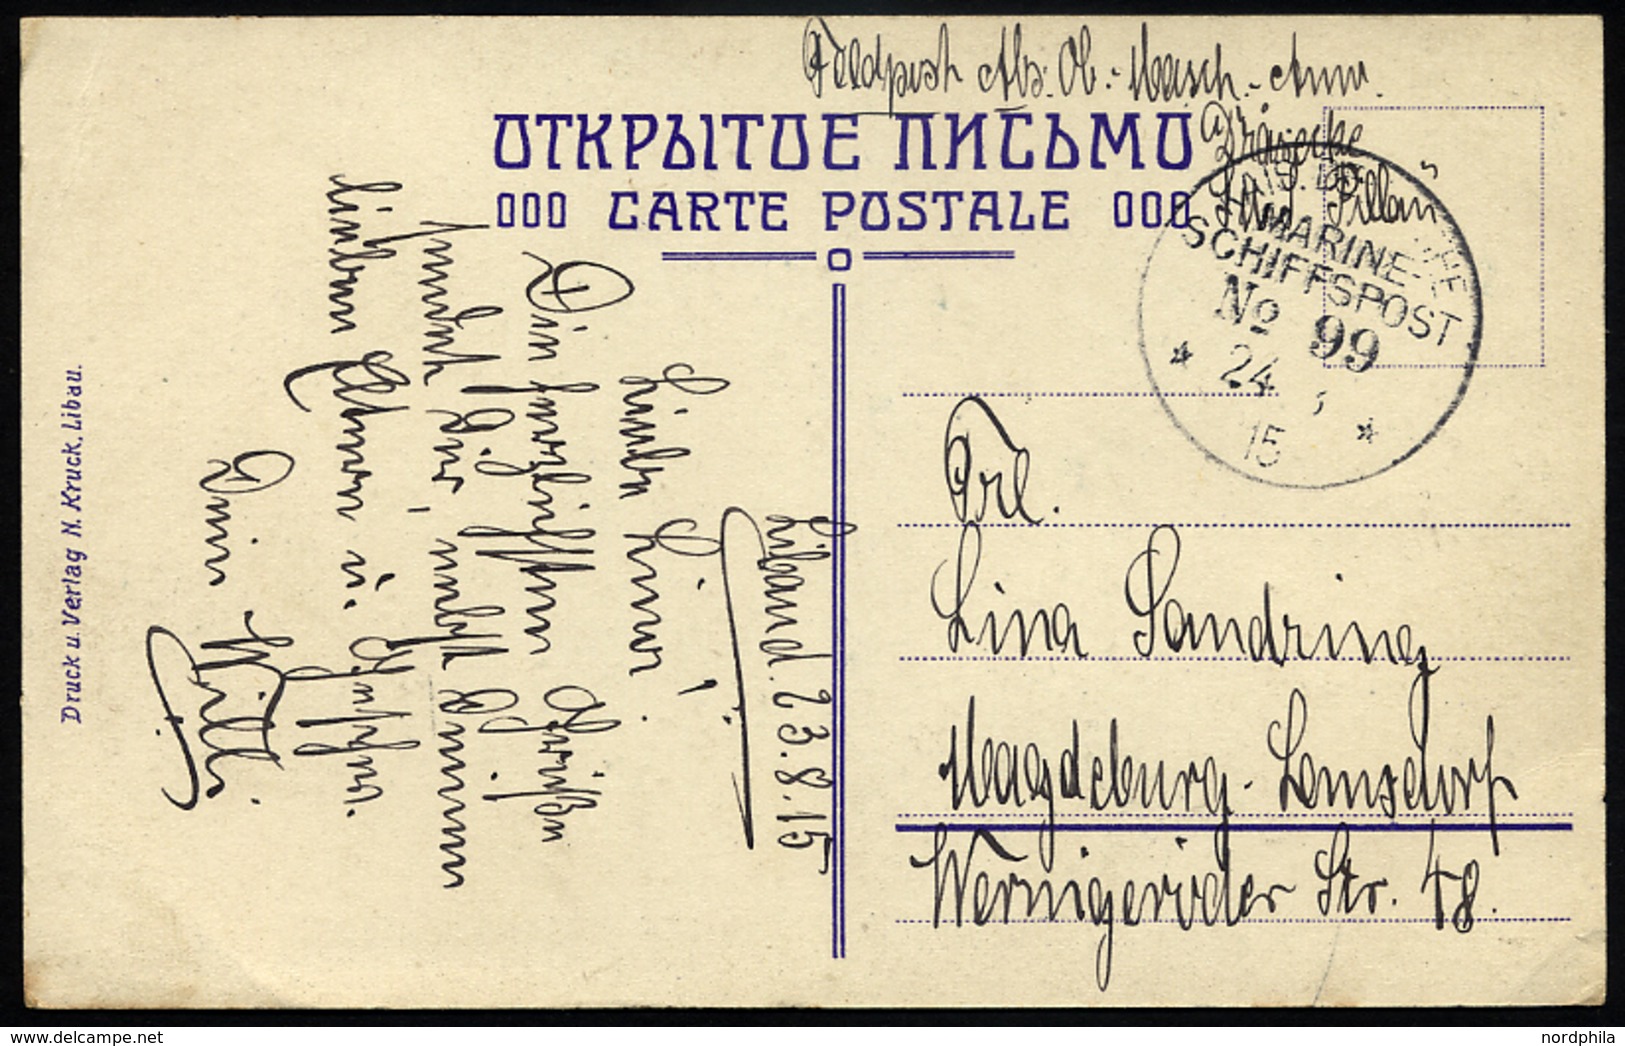 MSP VON 1914 - 1918 99 (Kleiner Kreuzer PILLAU), 24.8.1915, Feldpost-Ansichtskarte Von Bord Der Pillau, Pracht - Marítimo